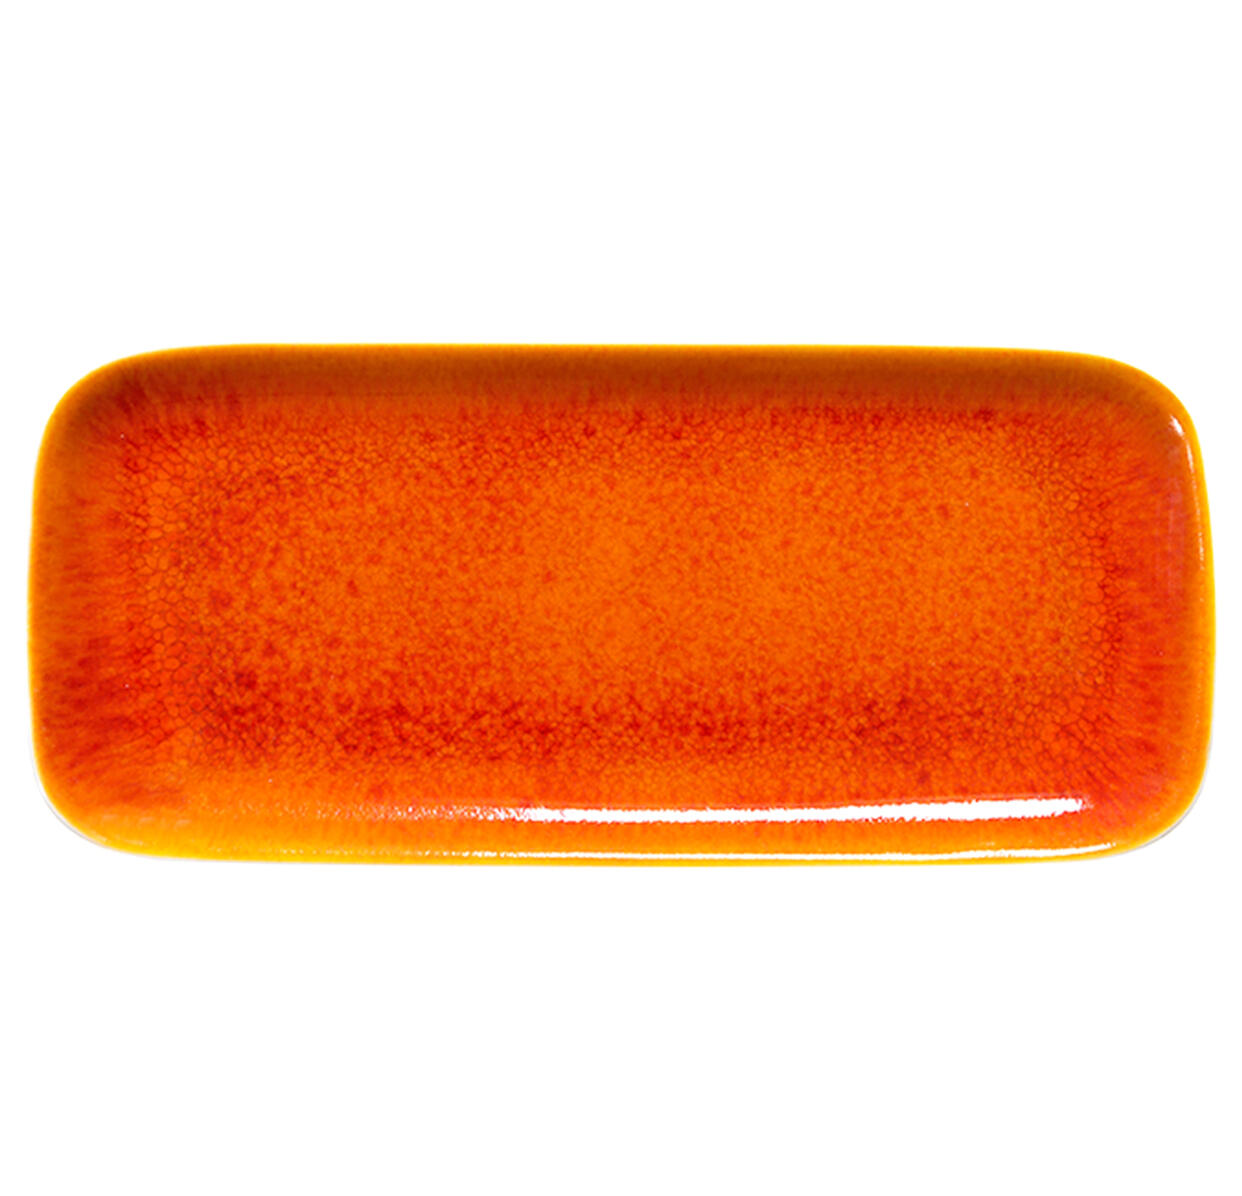 plat-cake-tourron-orange-964309